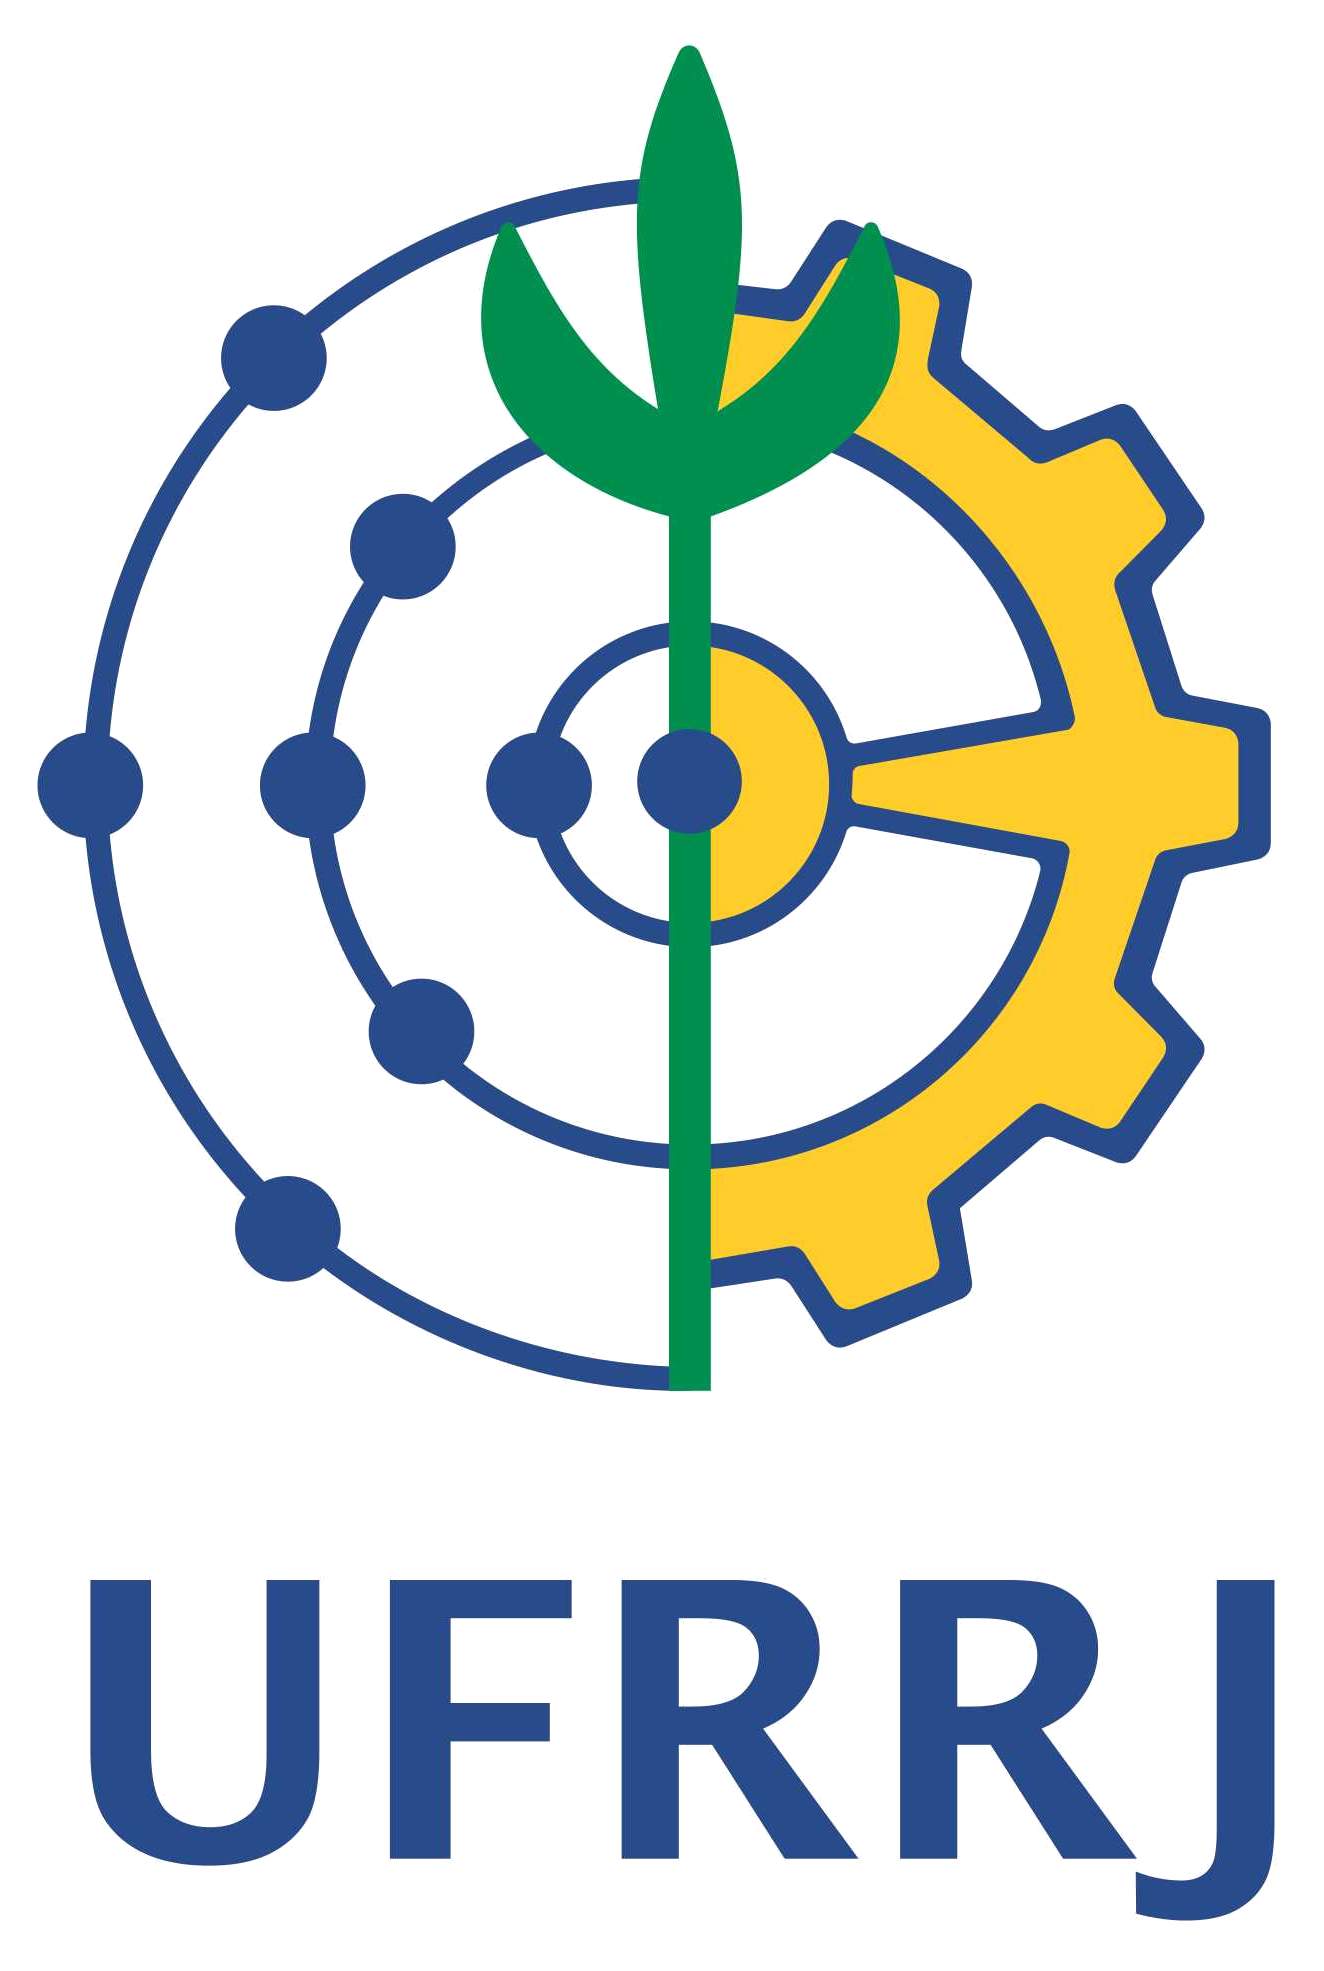 Federal Rural University of Rio de Janeiro logo